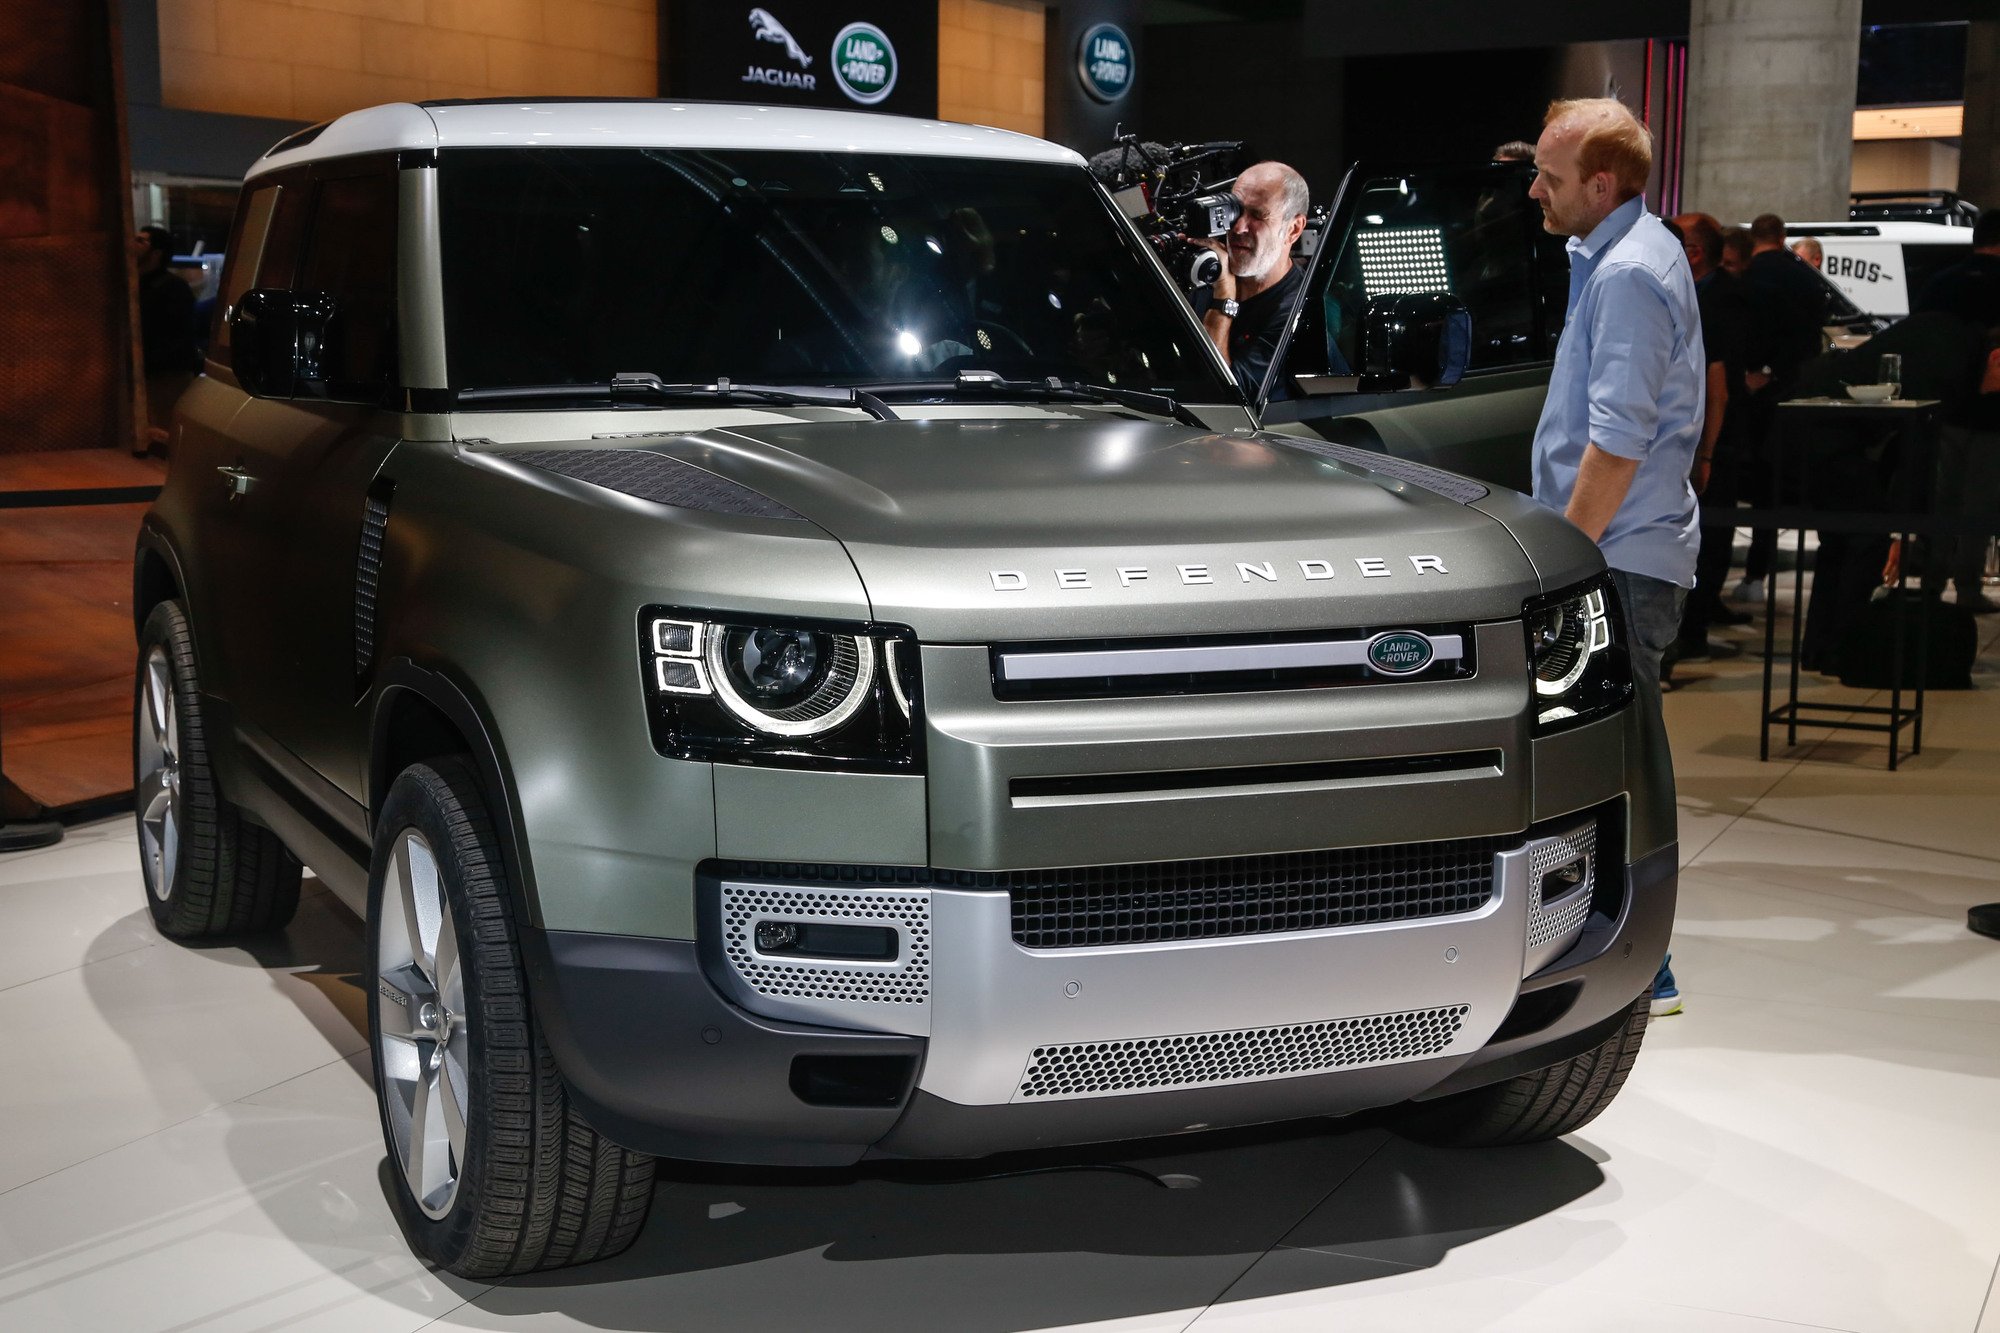 Nuovo Land Rover Defender: il ritorno della leggenda al Salone di Francoforte 2019 [Video]